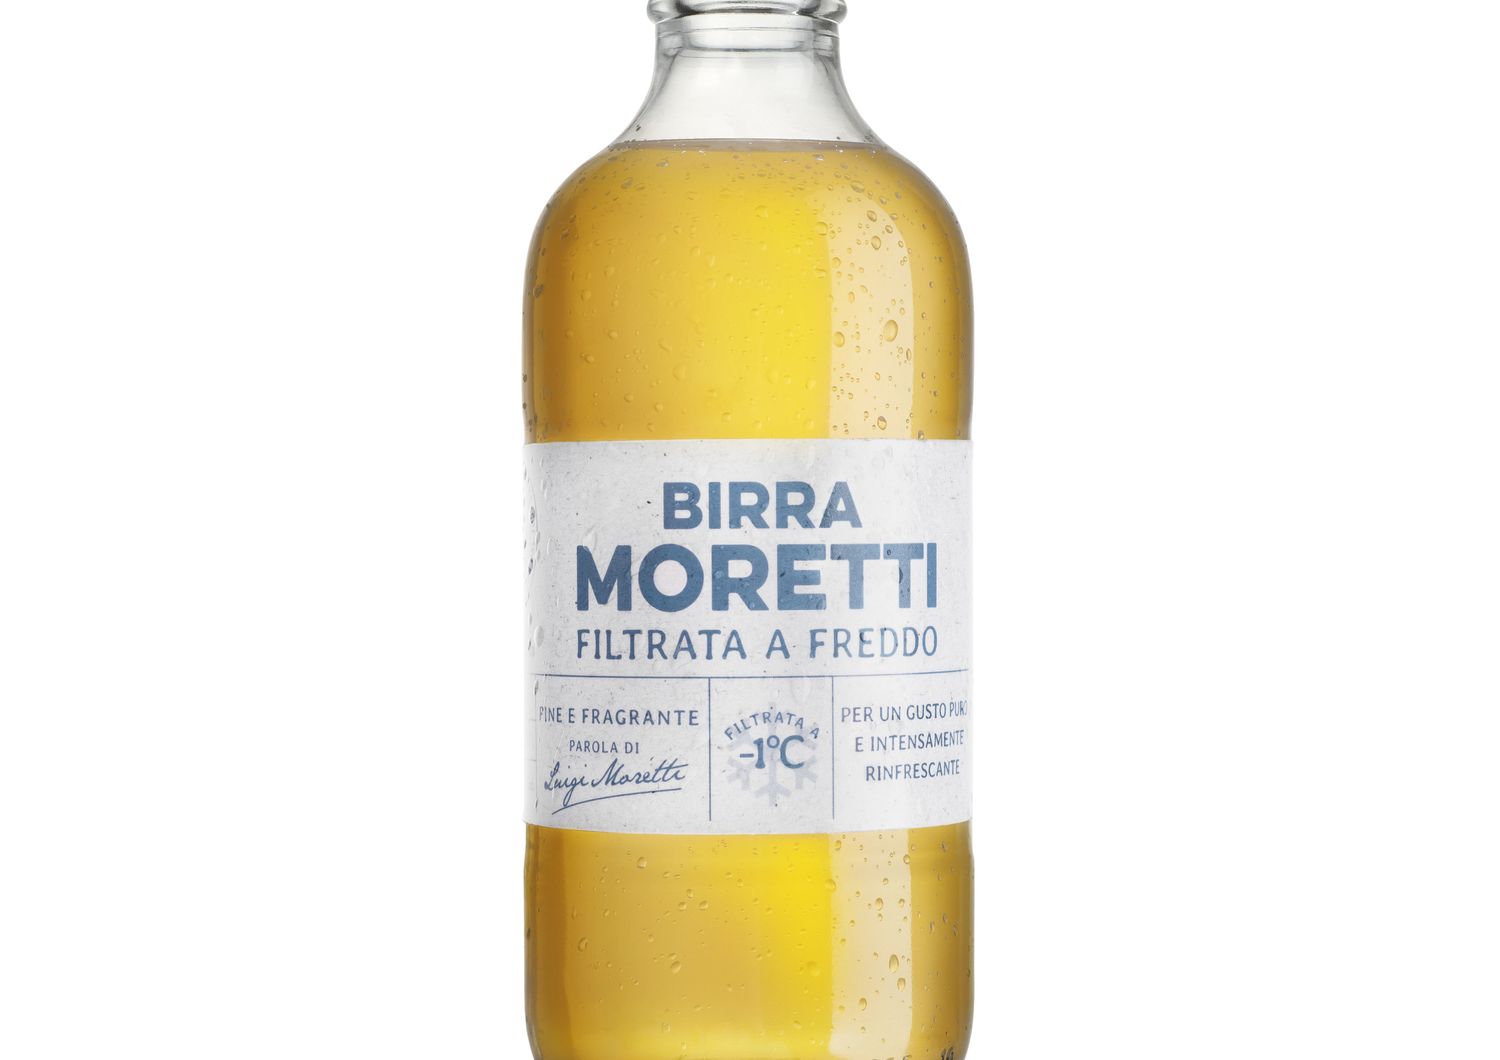 Birra Moretti filtrata a freddo